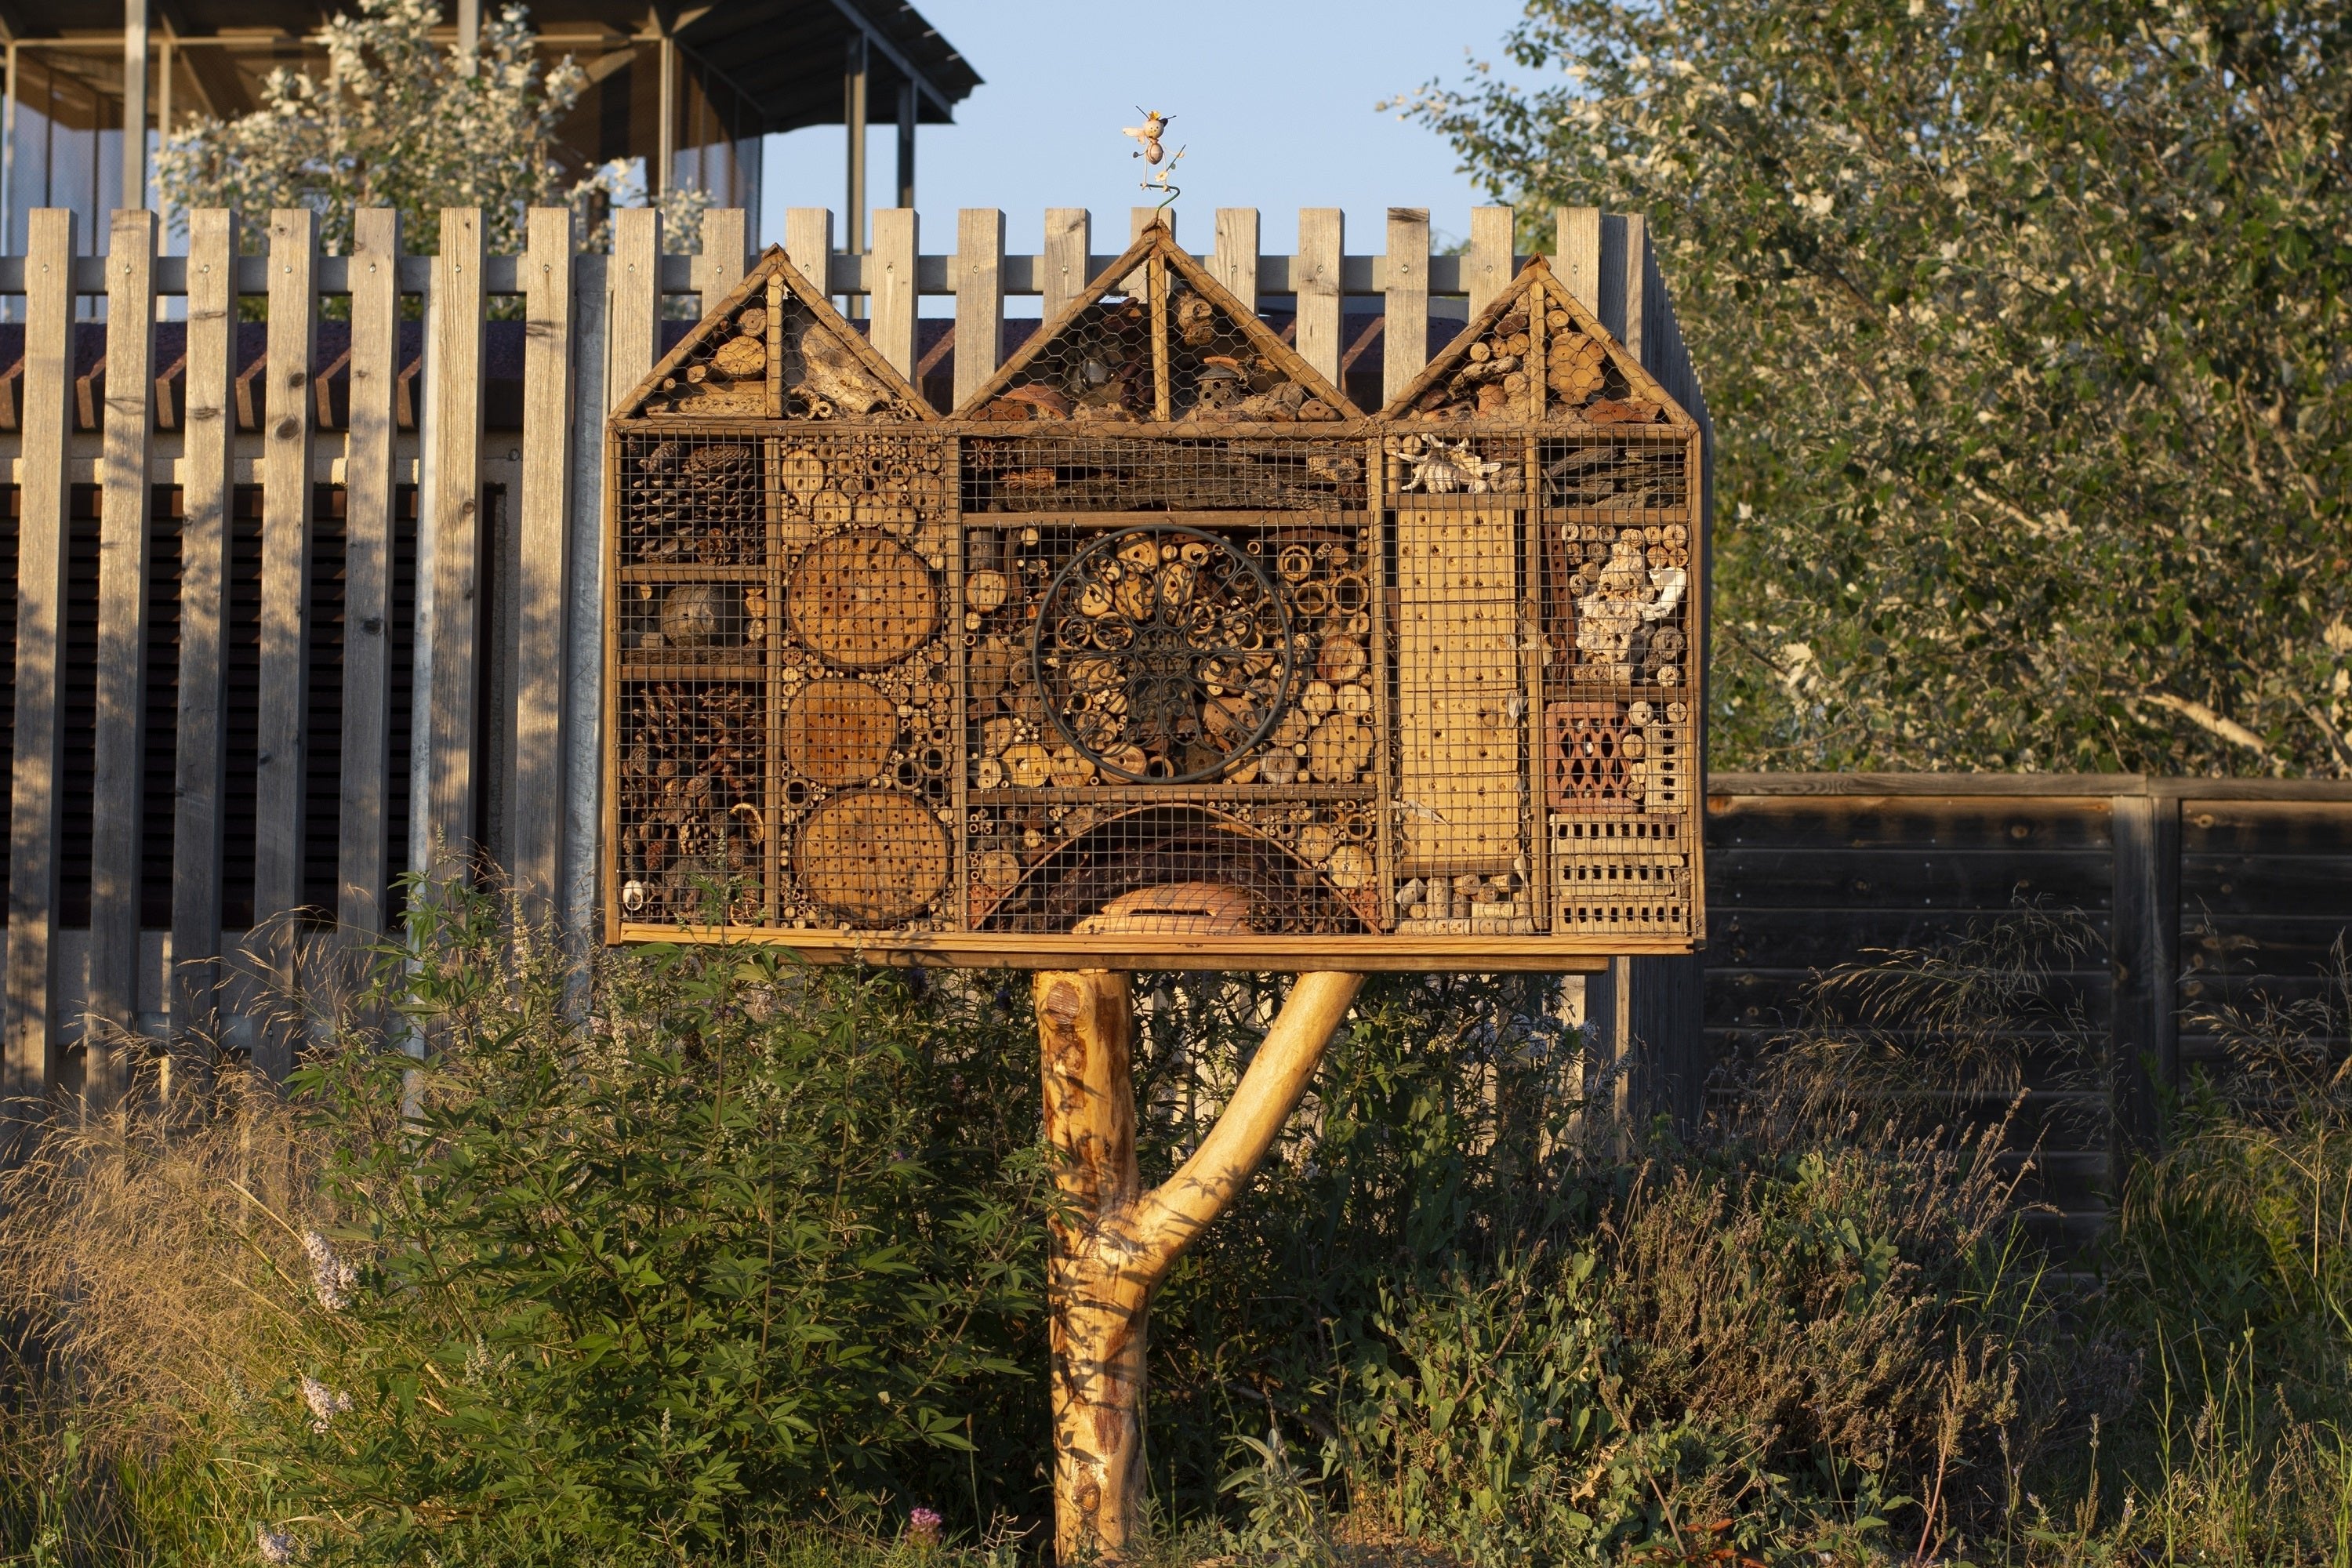 Bienenhotels im Garten werden immer mehr zum Trend und können ganz leicht gebaut werden